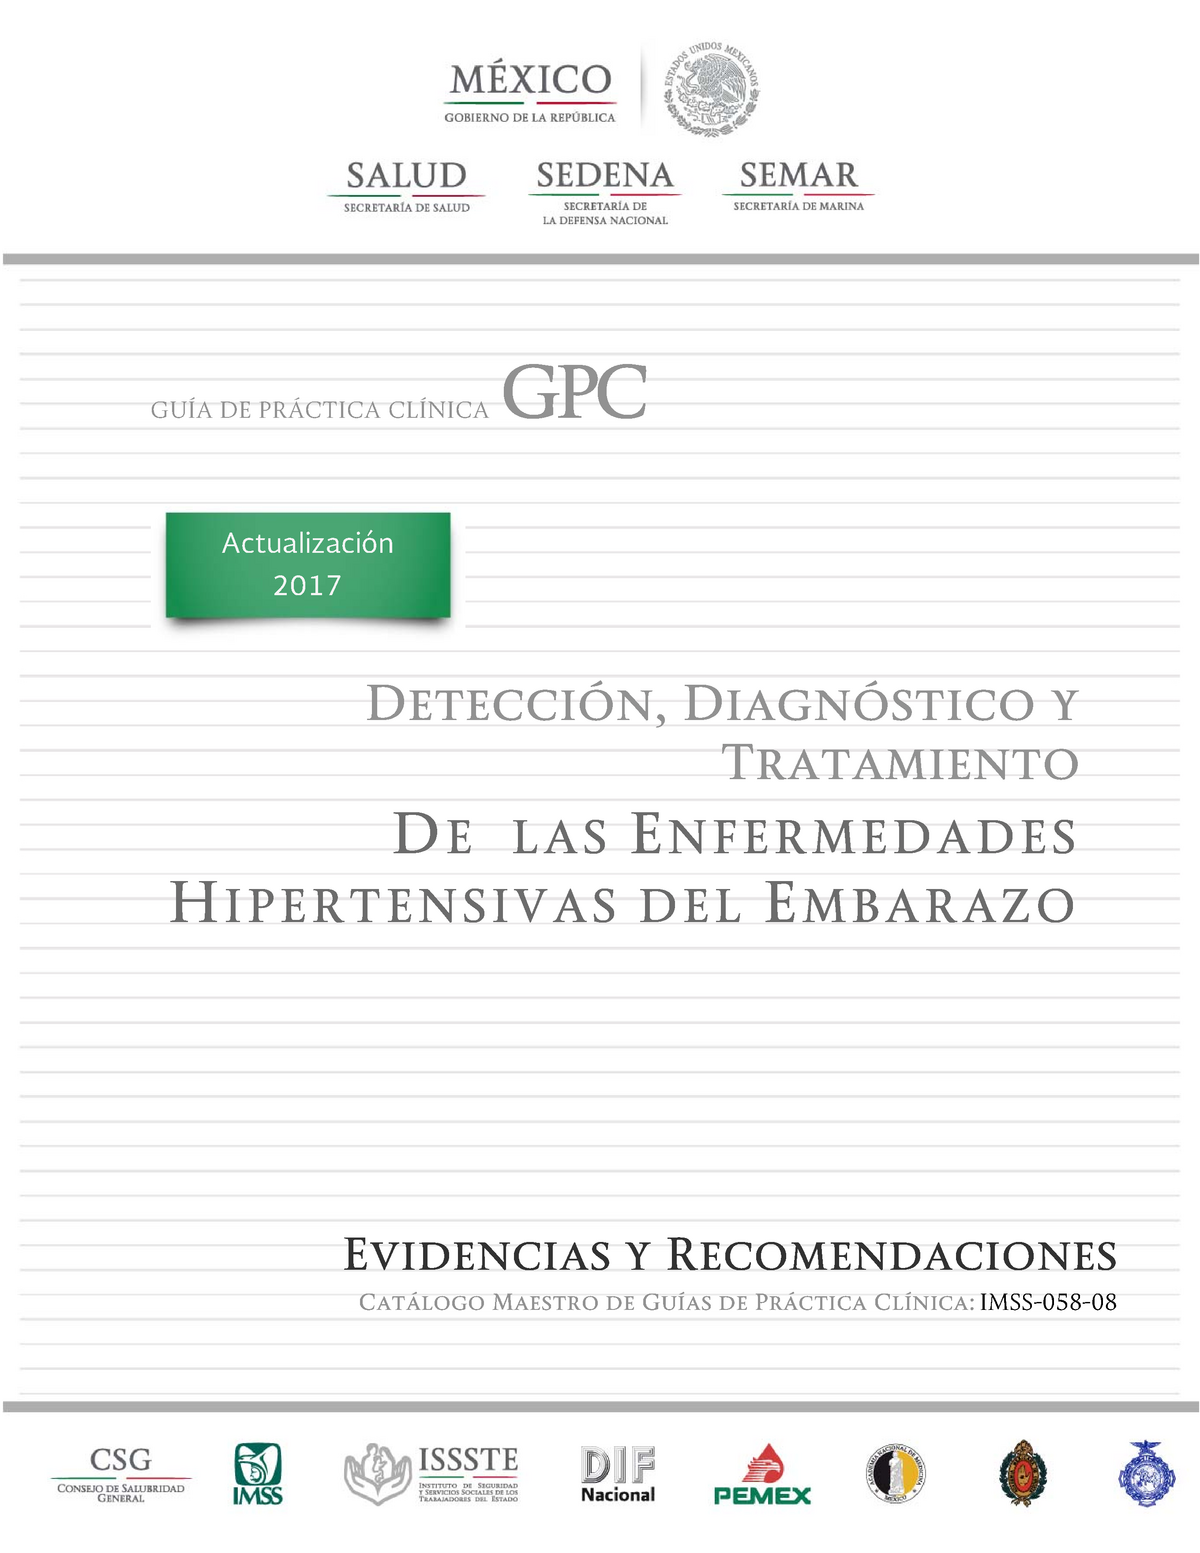 Enf Hipertensivas Del Embarazo GuÍa De PrÁctica ClÍnica Gpc Detección Diagnóstico Y 6840